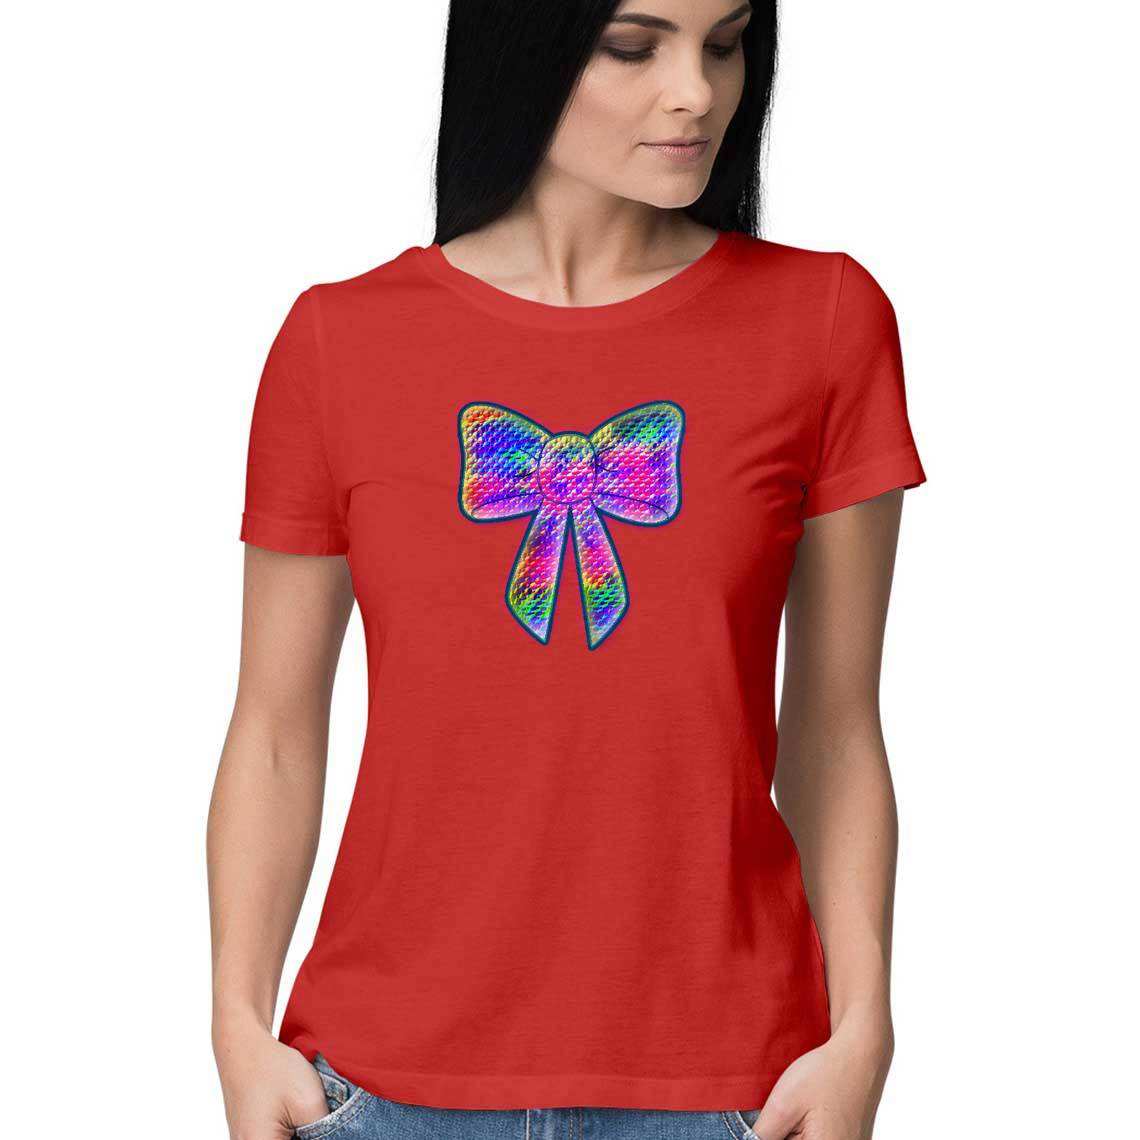 PsyBow Women's T-Shirt - CBD Store India